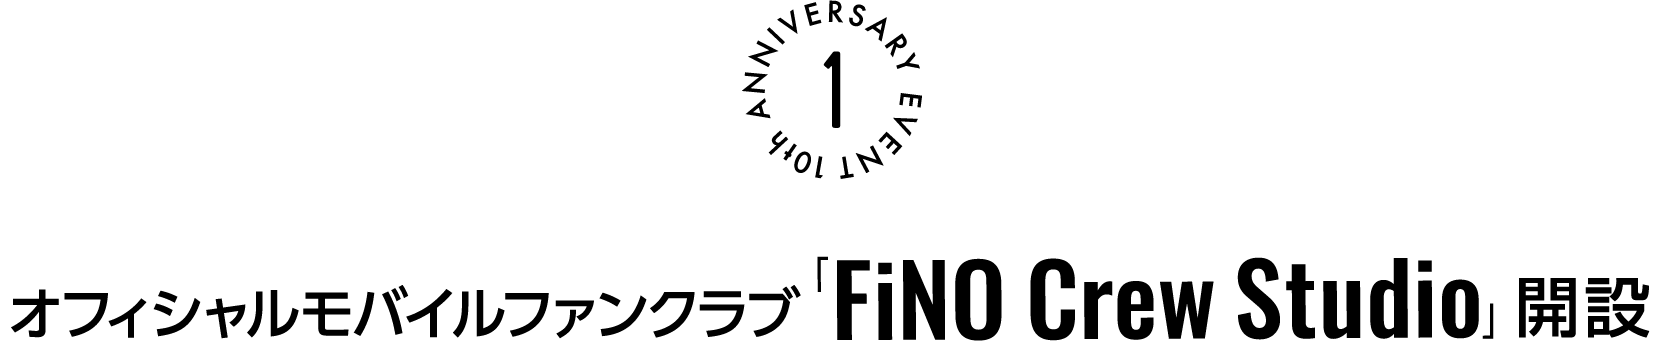 モバイルファンクラブ「FiNO Crew Studio」